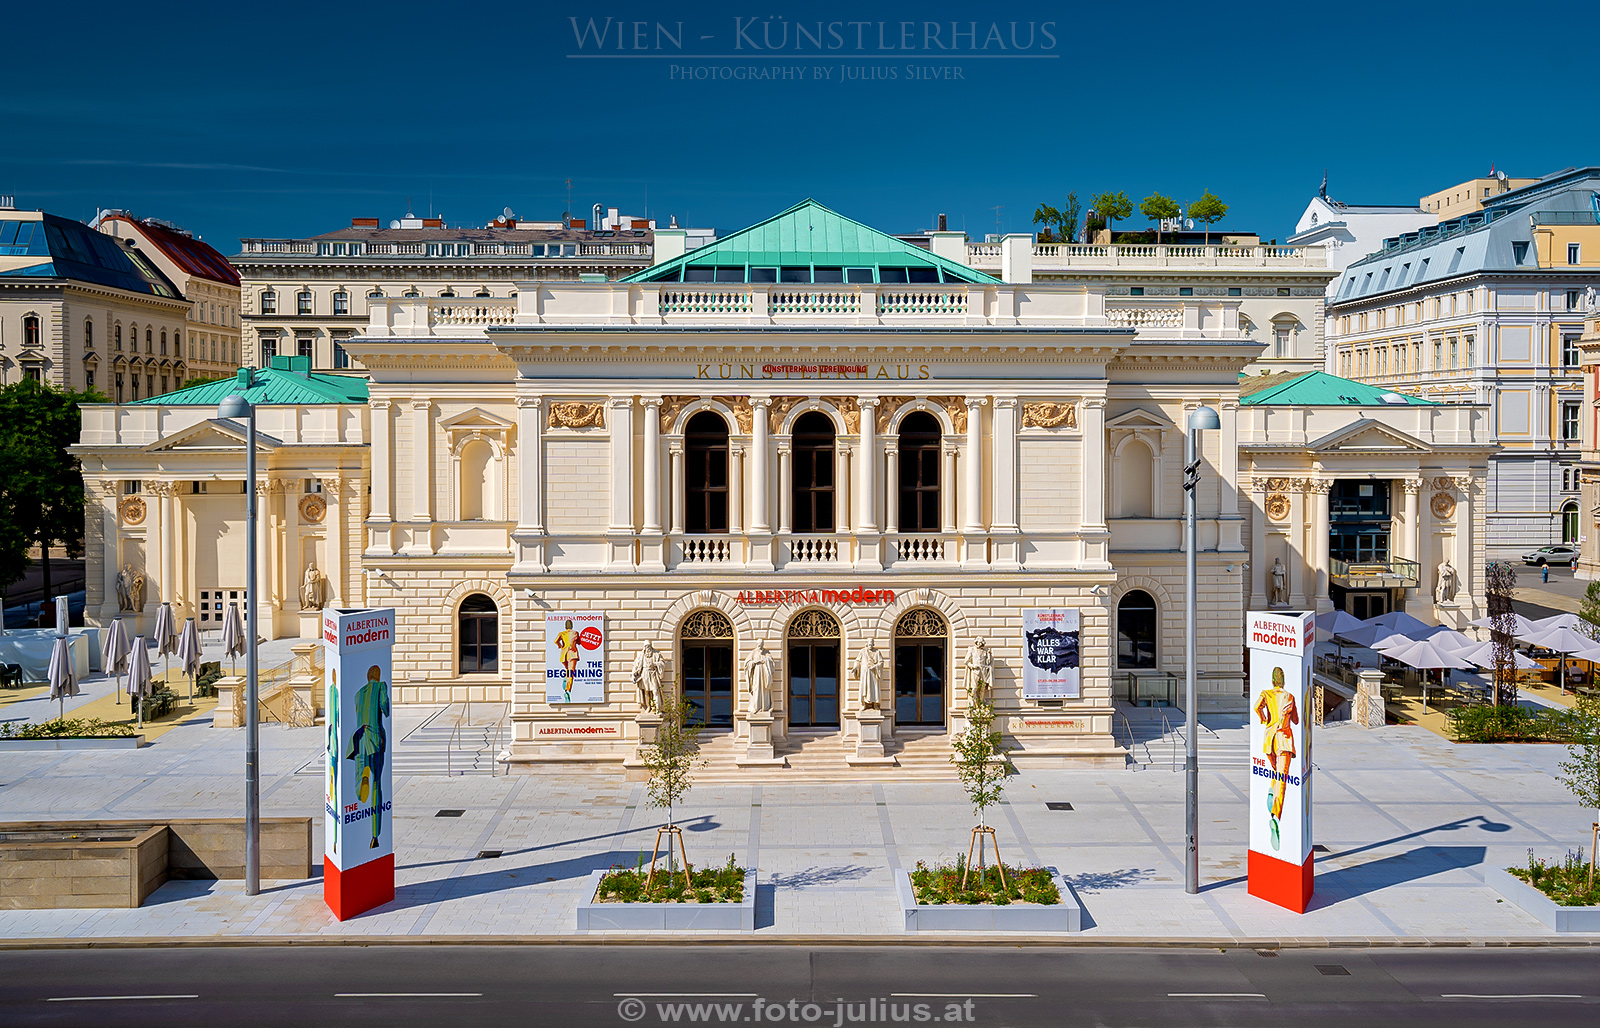 W7126a_Kunstlerhaus_Wien.jpg, 937kB